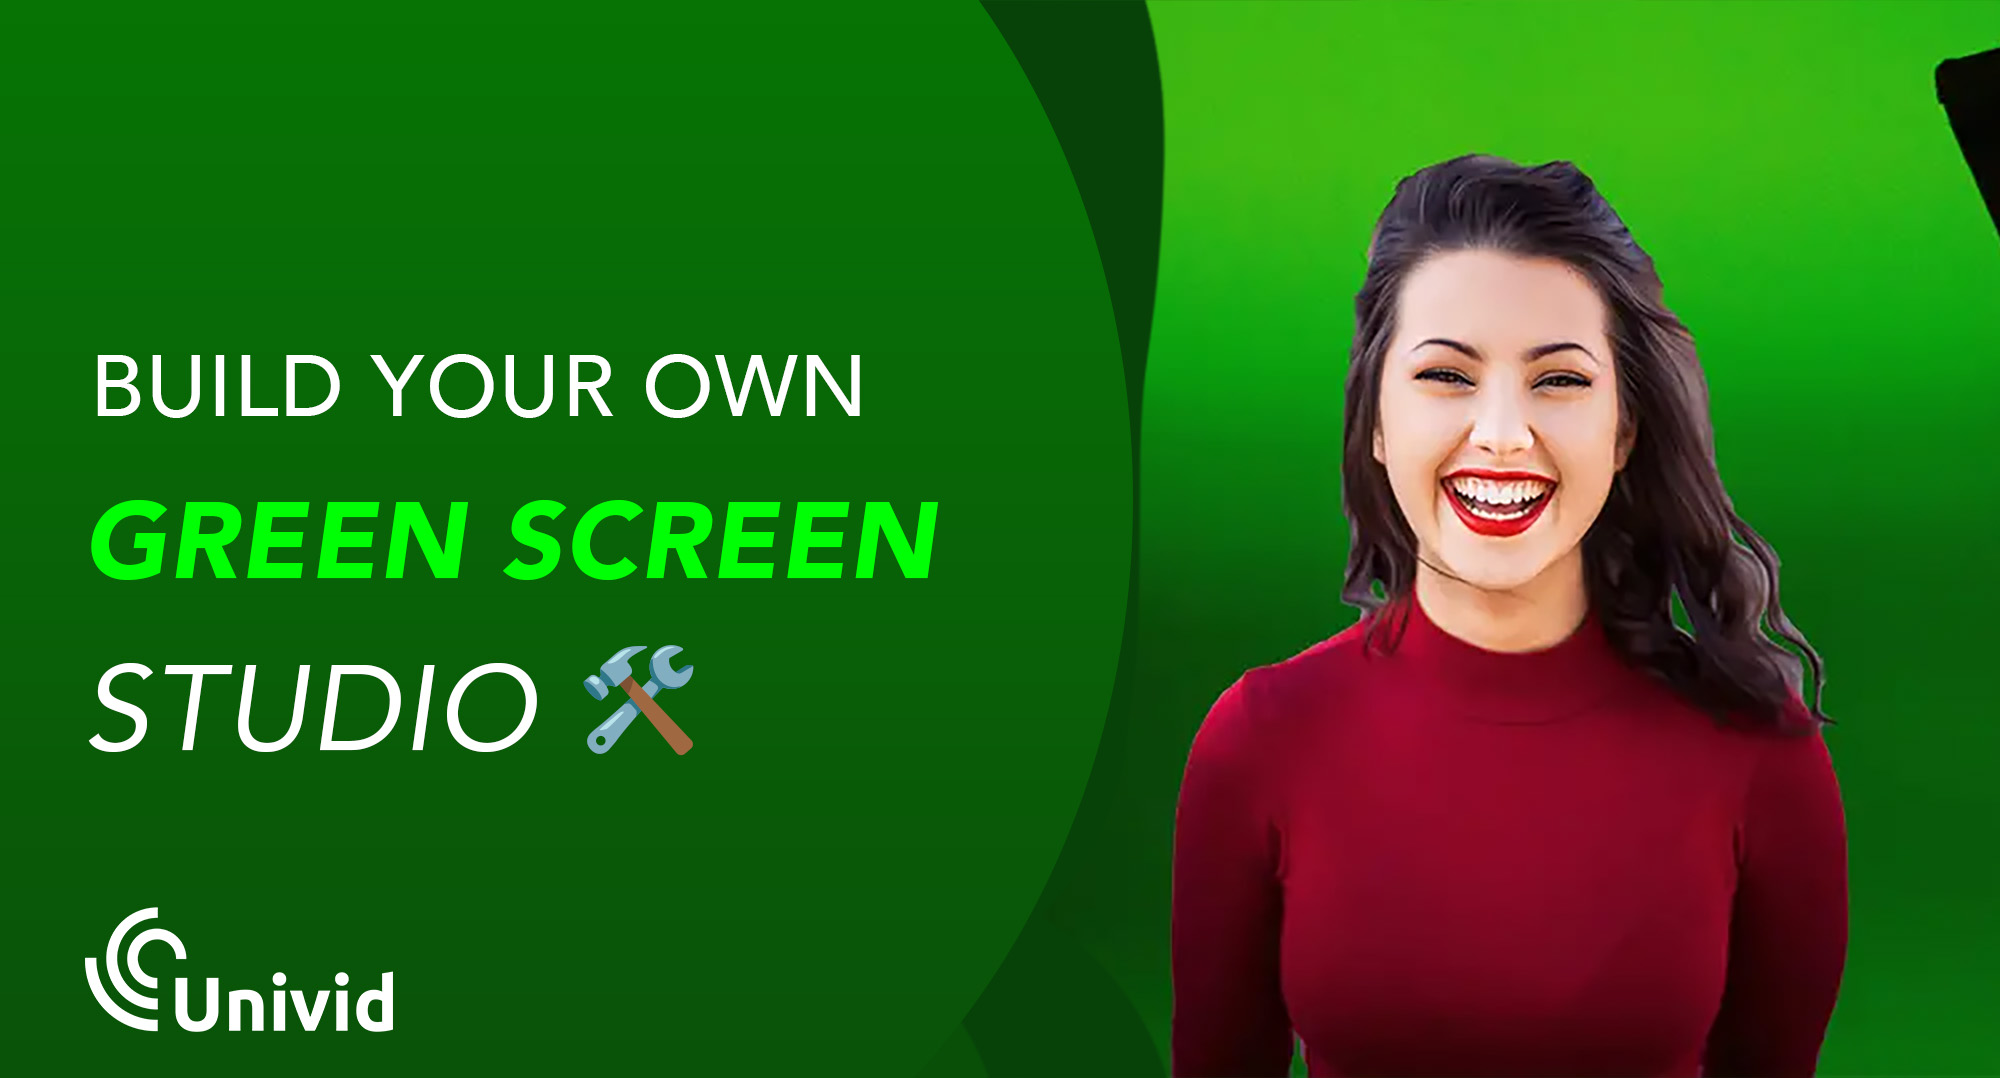 Att bygga en green screen studio kräver inte mer än ett grönt tyg som bakgrund och en app eller program på din dator. Vi går igenom vad en green screen är och hur det fungerar att sätta upp en egen – antingen för hemmet eller företagets kontorsstudio. Du får även 5 tips på vad du ska tänka på när du livestreamar med virtuell bakgrund.